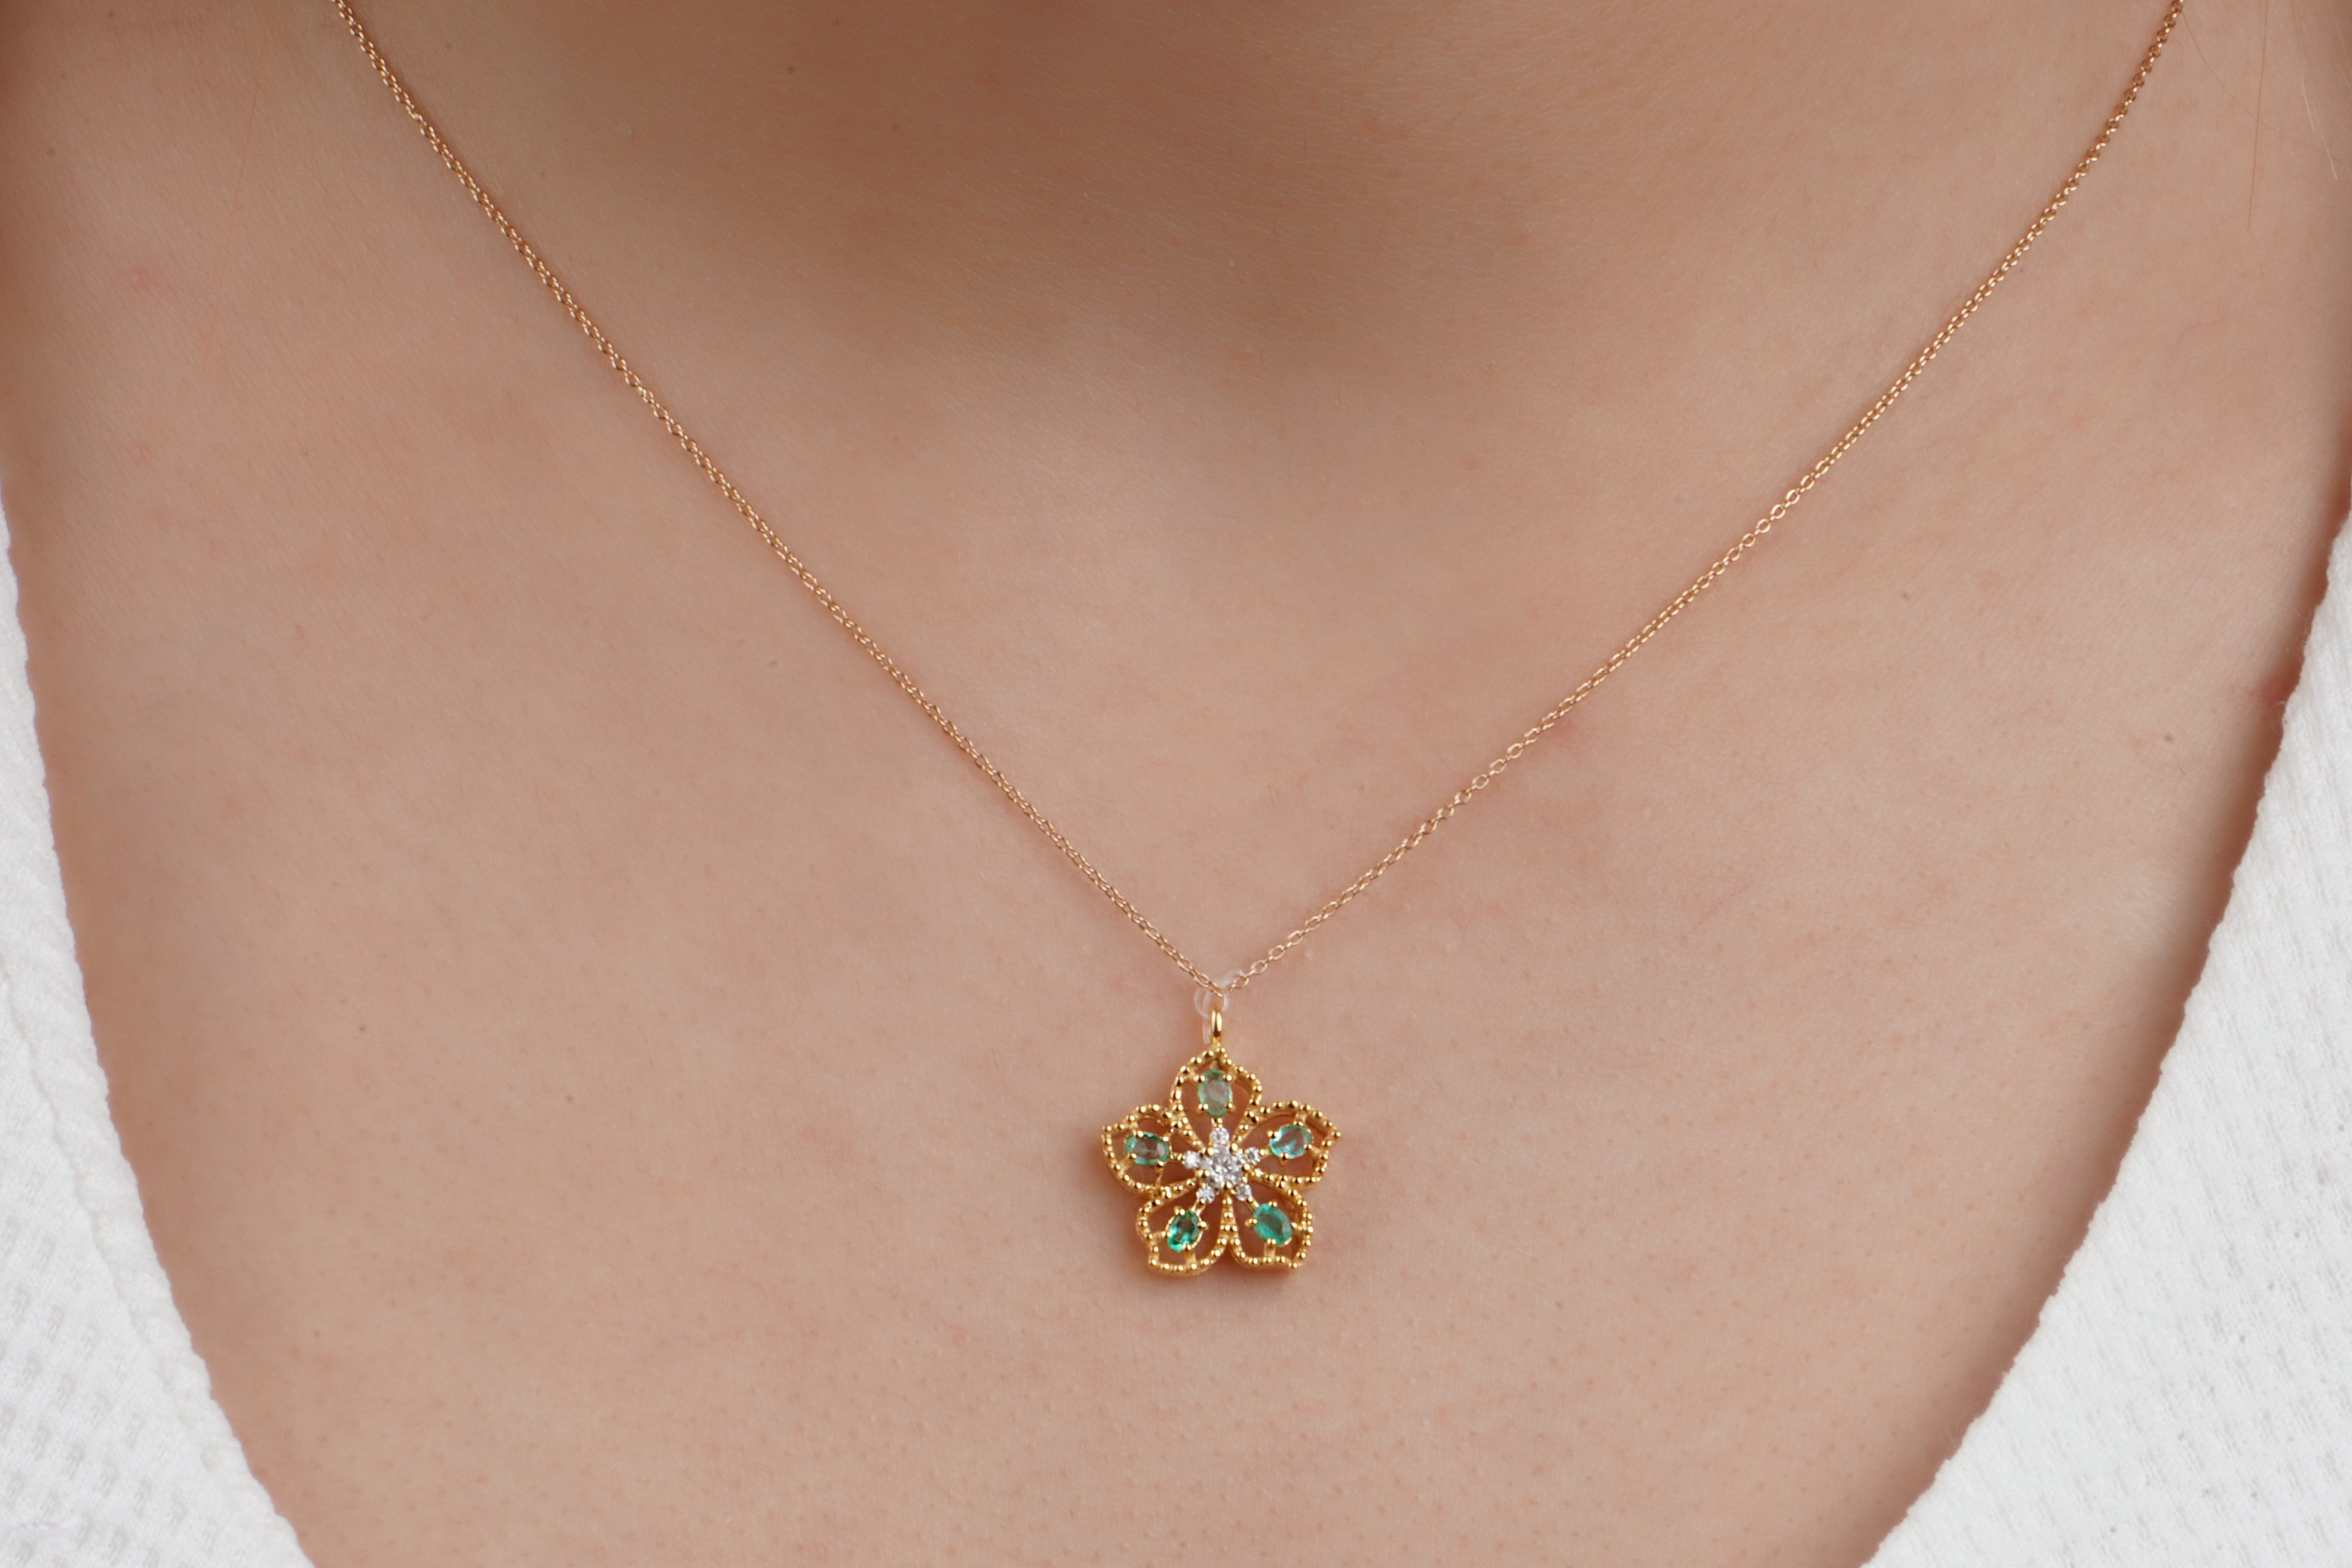 Eternal flower pendant